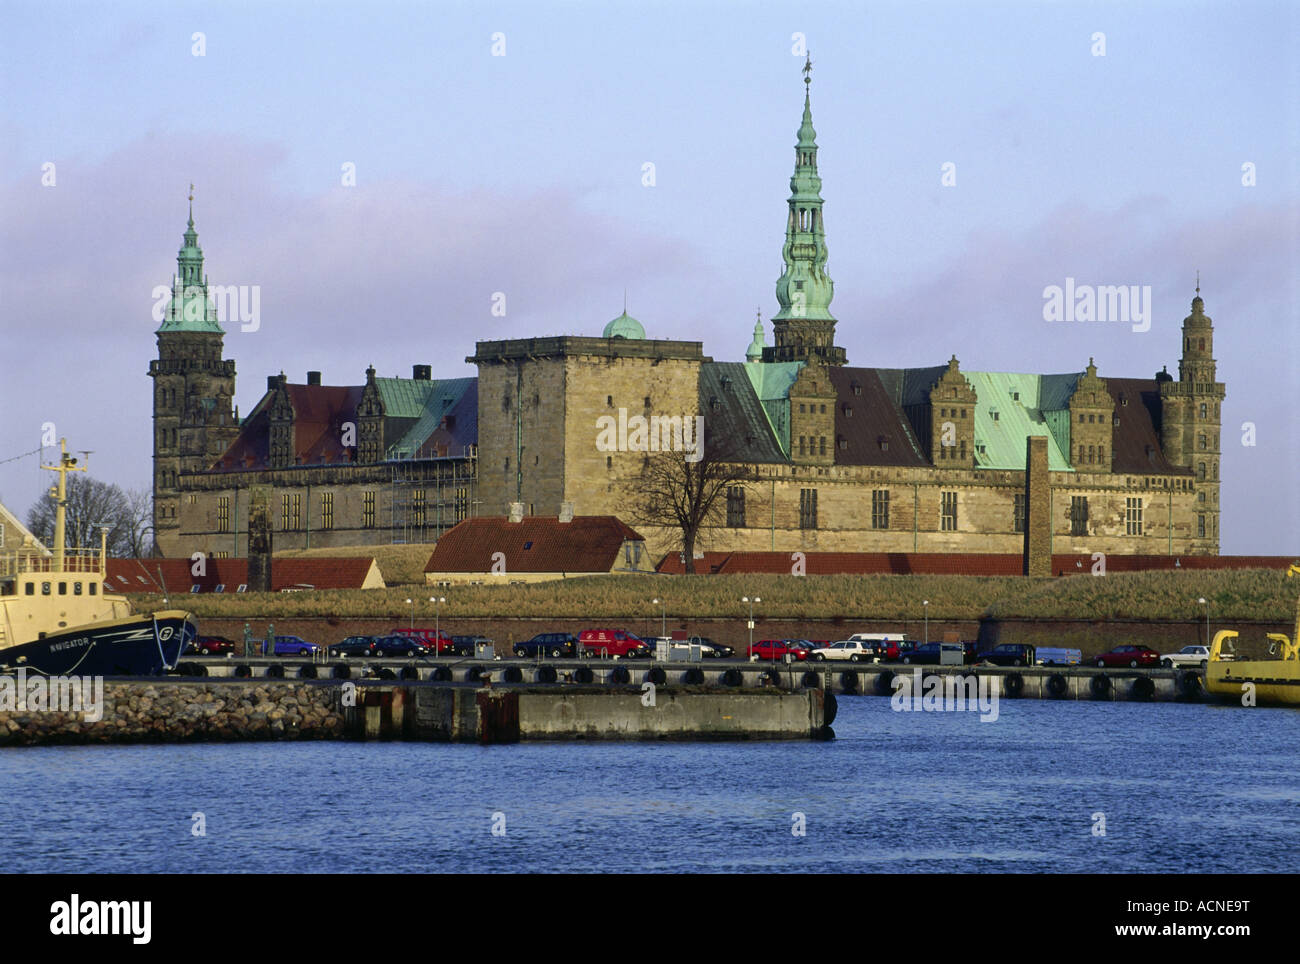 Geografia / viaggi, Danimarca, Helsingor, castelli, Castello Kronborg, vista esterna, isola di Sjaelland, Oresund, Mare del Nord, renaissan Foto Stock